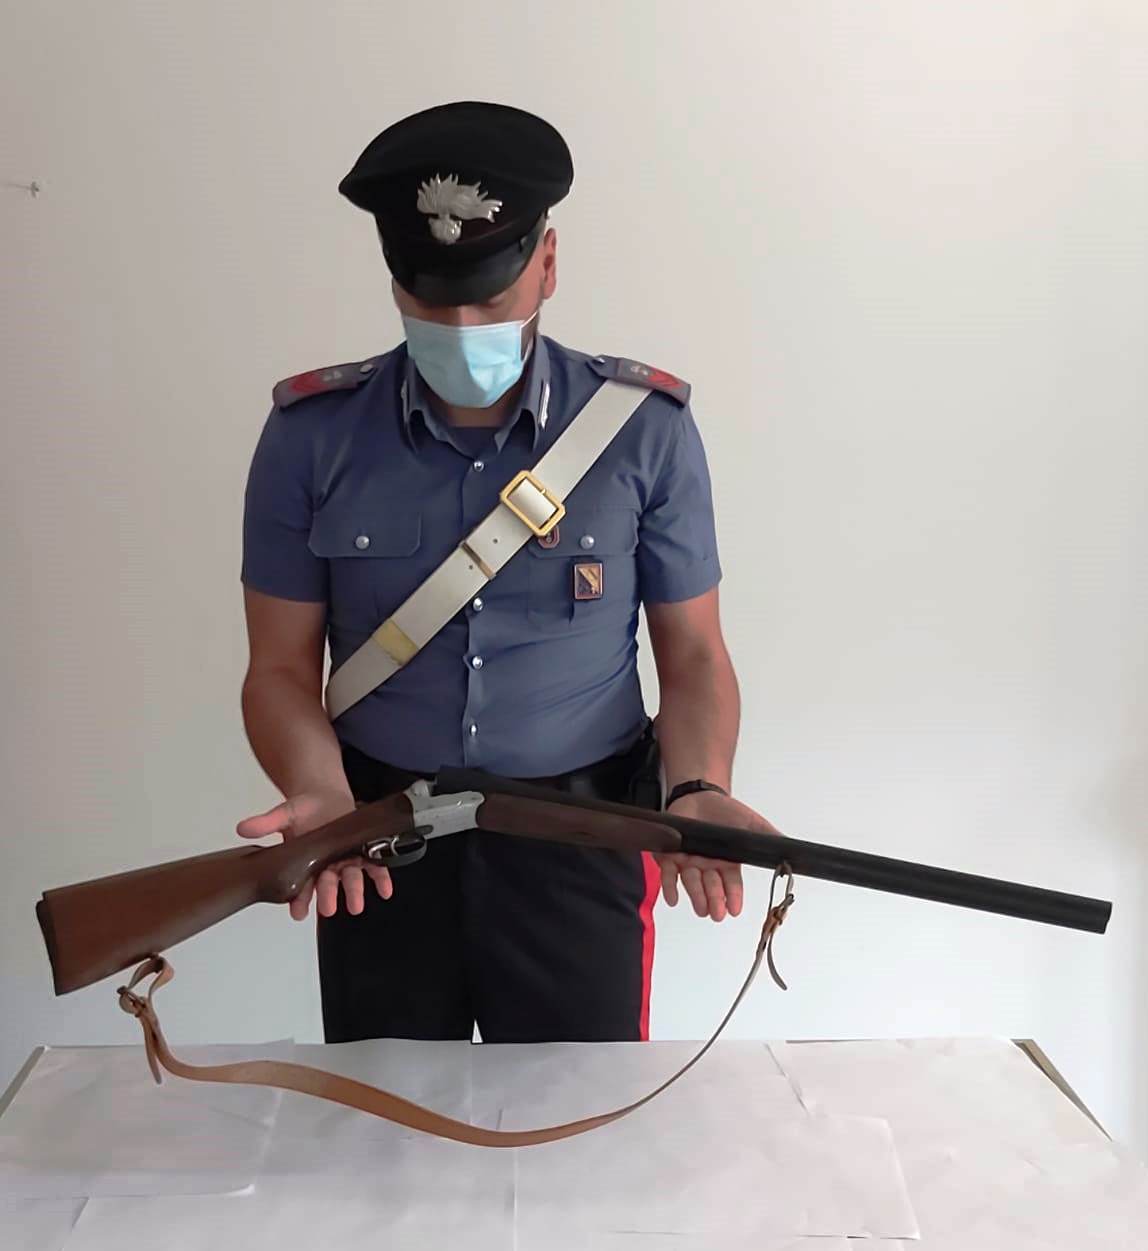 San Giorgio La Molara: controlli sulle armi, denunciato dai Carabinieri per omessa custodia